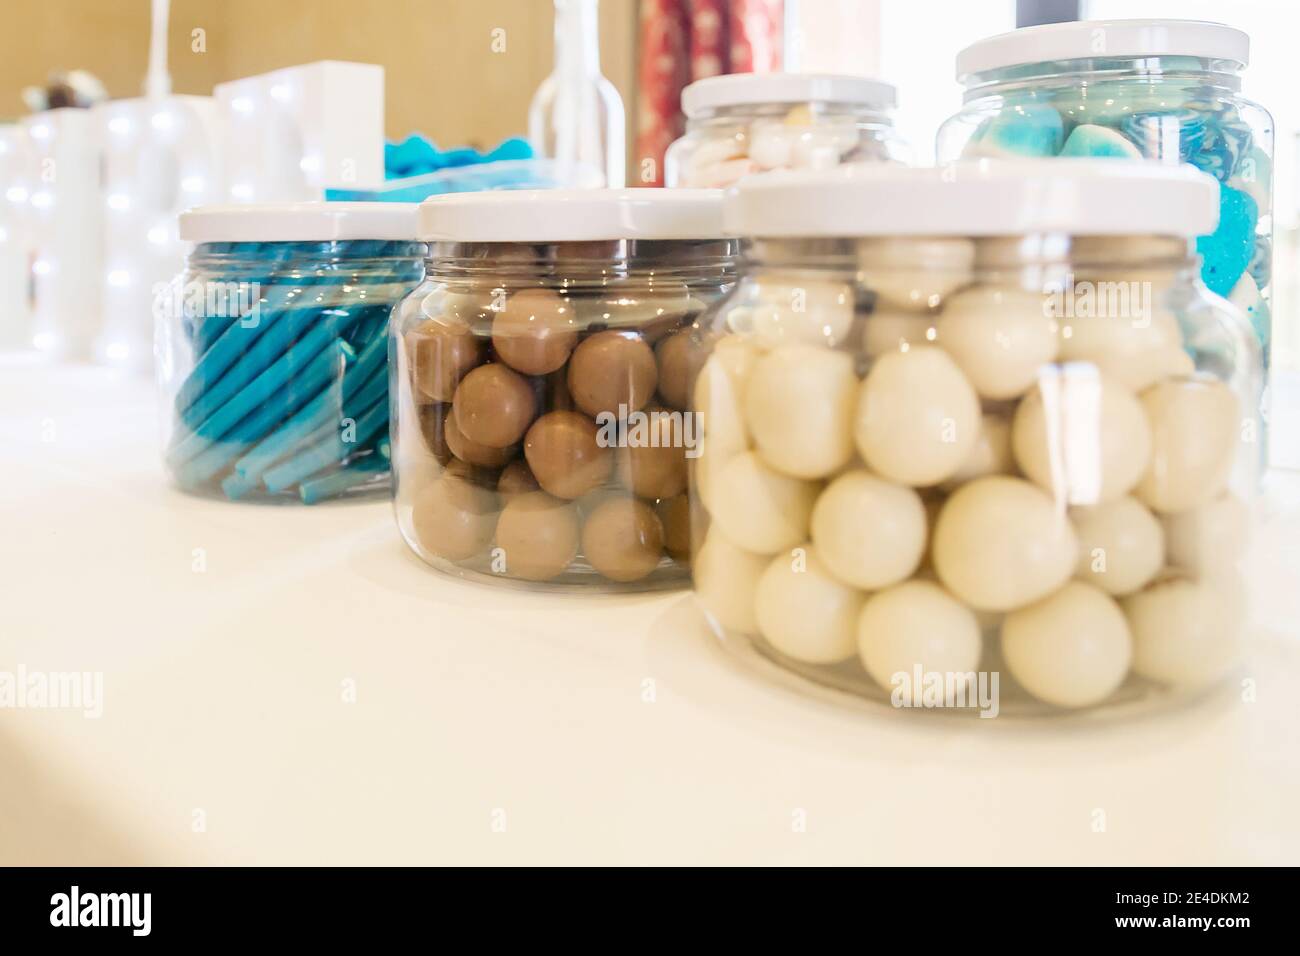 Bocaux en verre avec bonbons et chocolats, bleu, brun et blanc, sur une table lors d'une fête. Banque D'Images